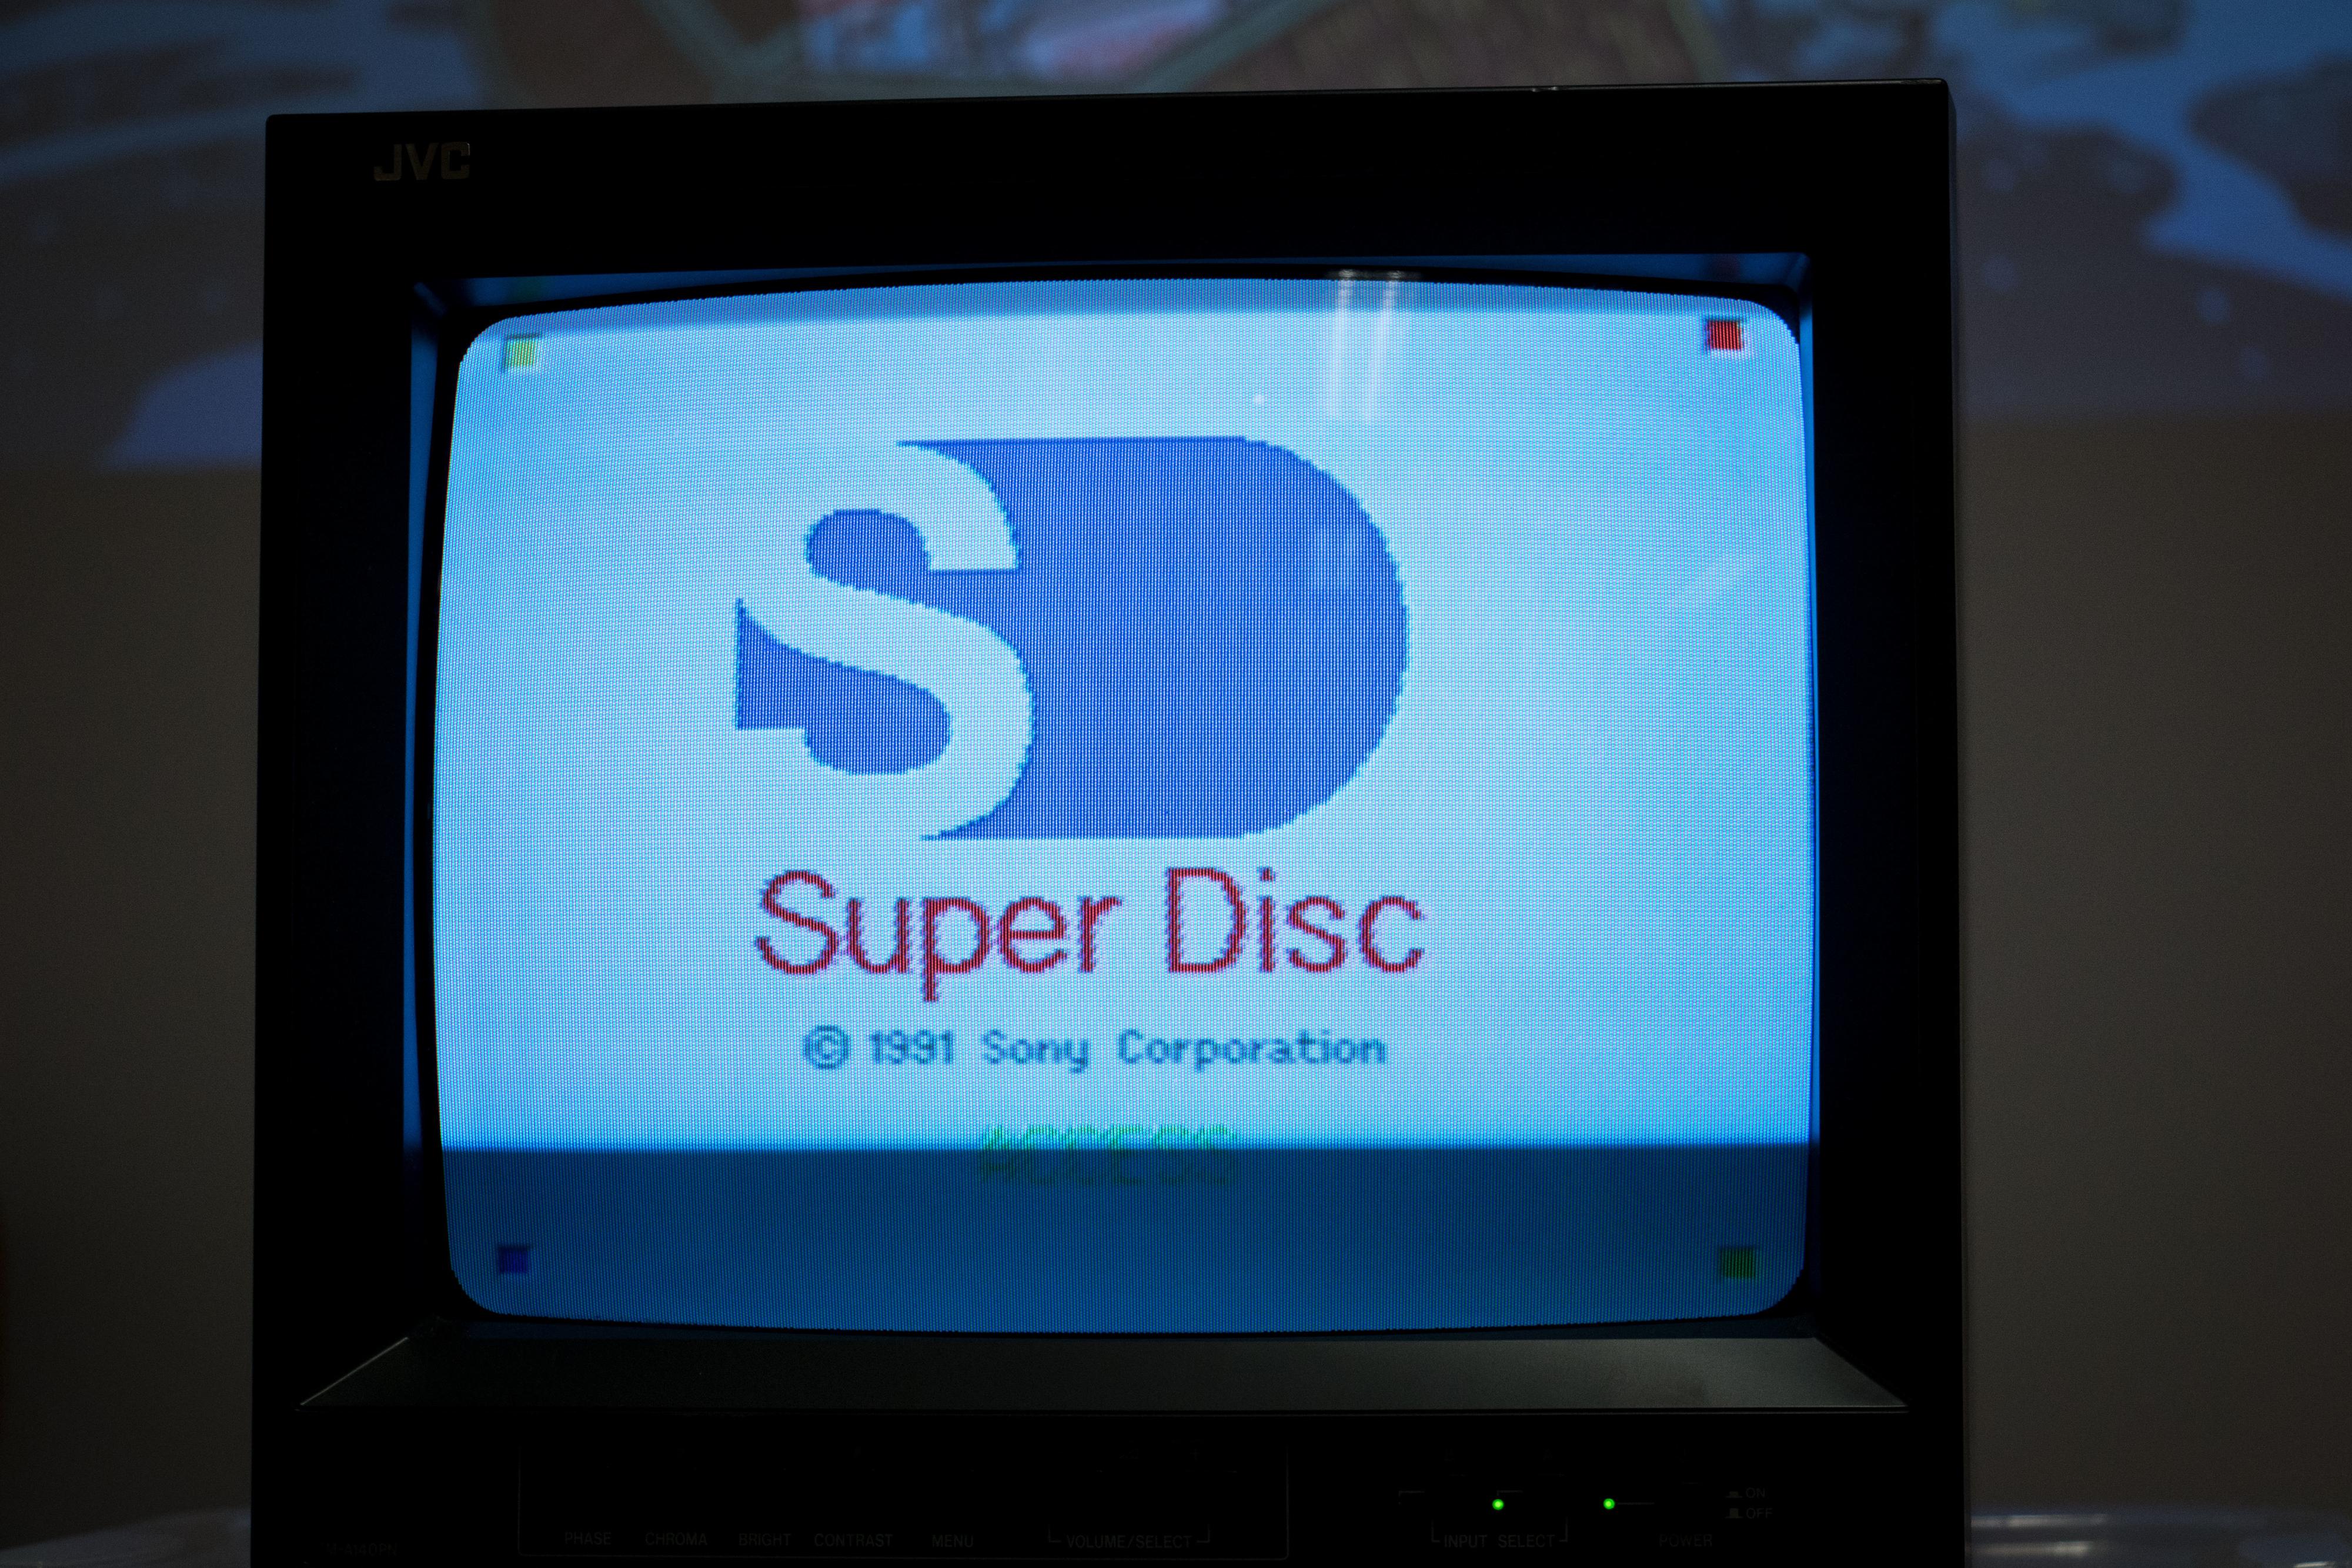 Skrur man på konsollen med Boot-kasetten i, lyser den klassiske Super Disc-logoen opp, før en generisk meny dukker opp.